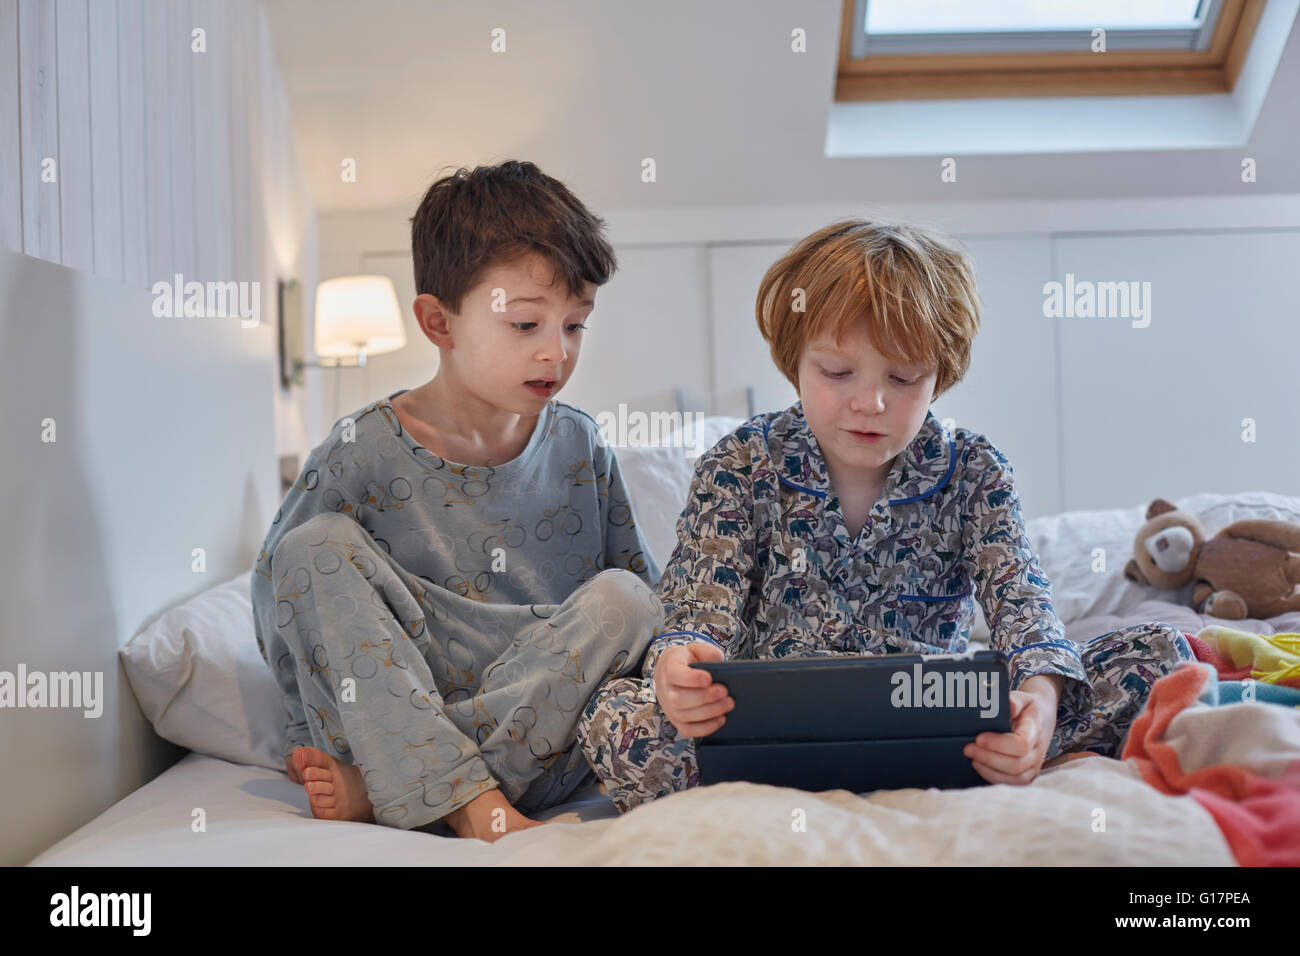 Les garçons en pyjama using digital tablet in bed Banque D'Images